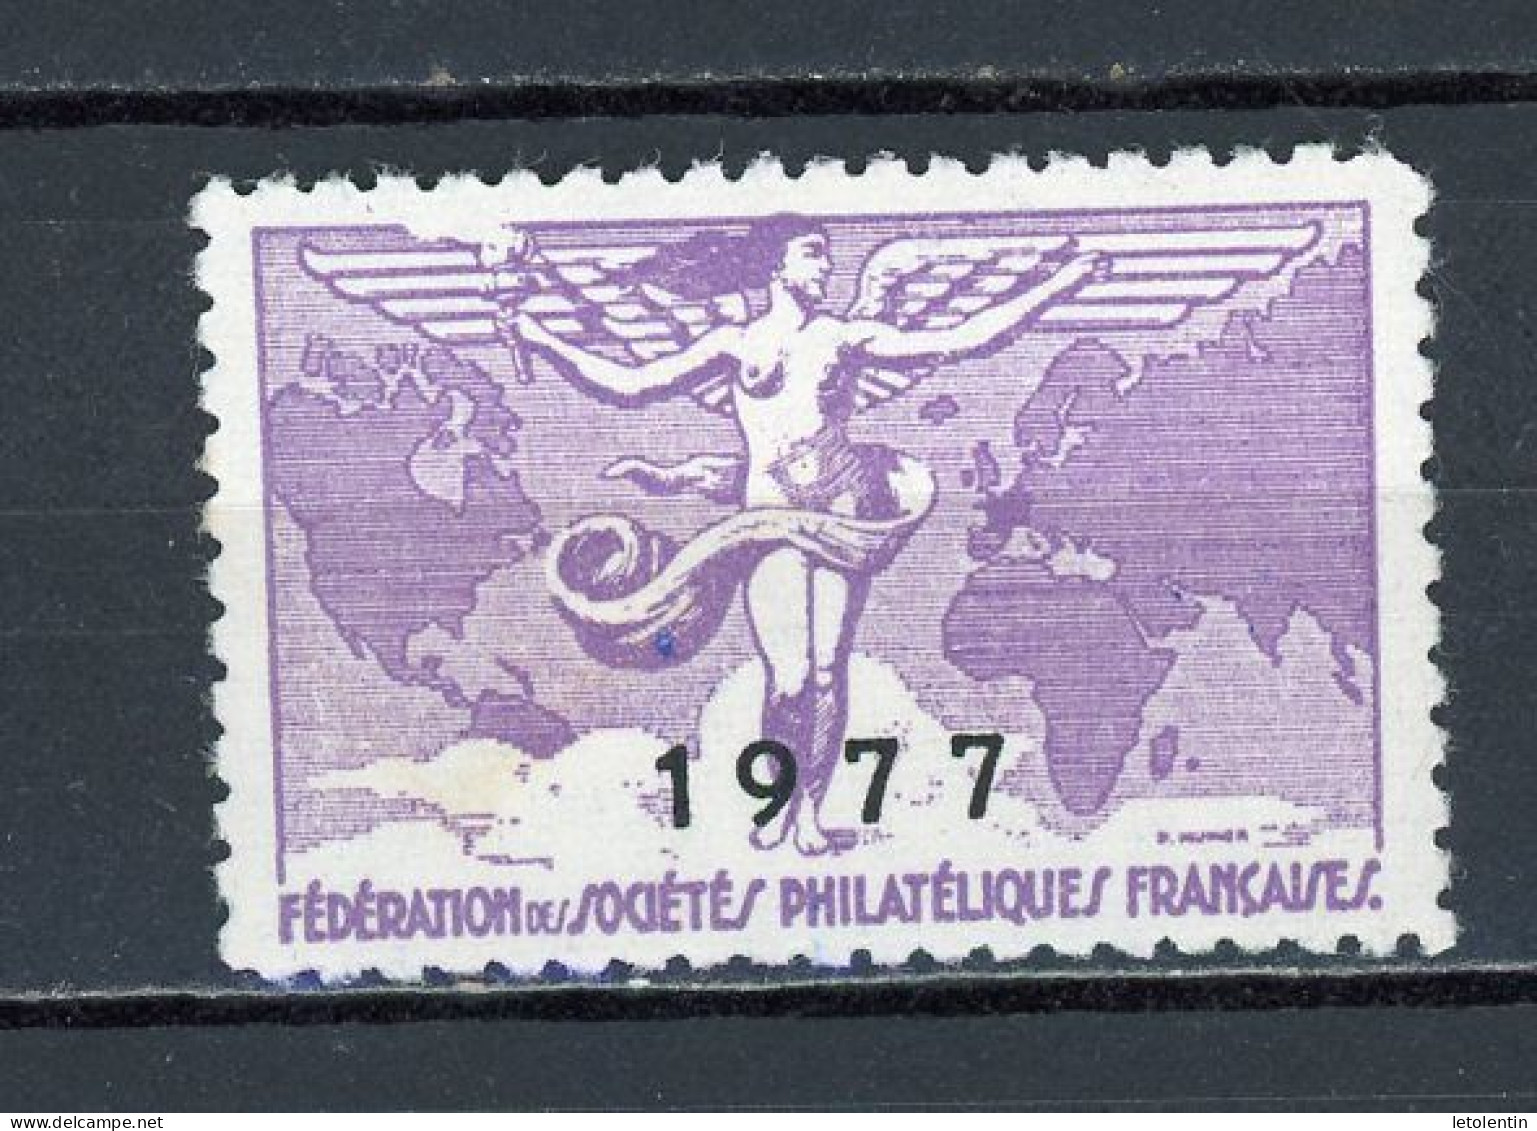 FEDERATION DES SOCIÉTÉS PHILATÉLIQUES FRANÇAISES 1977 * - Briefmarkenmessen